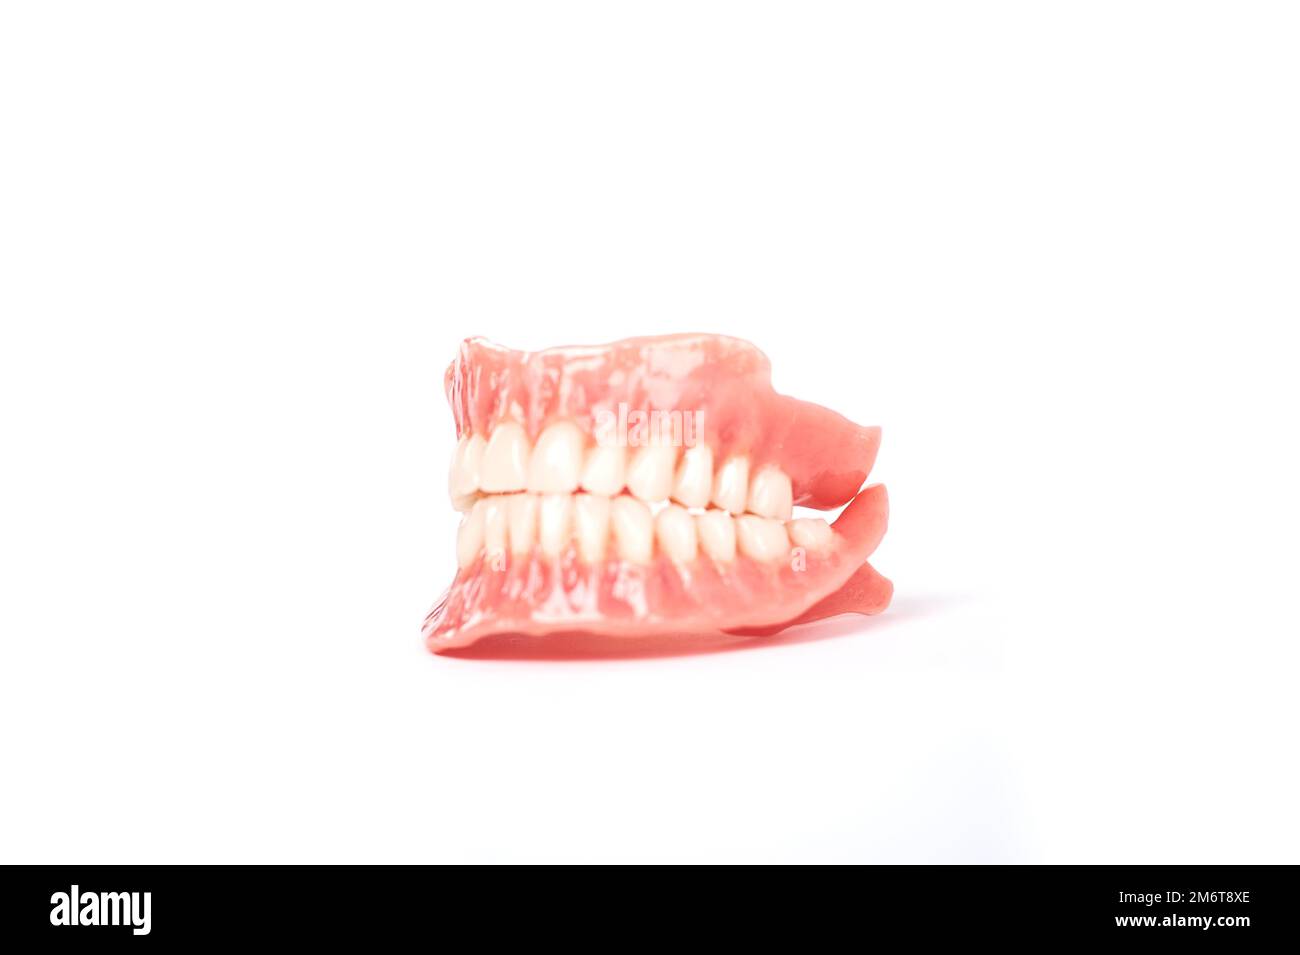 Es bonito el blanco nuclear en las prótesis de dientes anteriores?